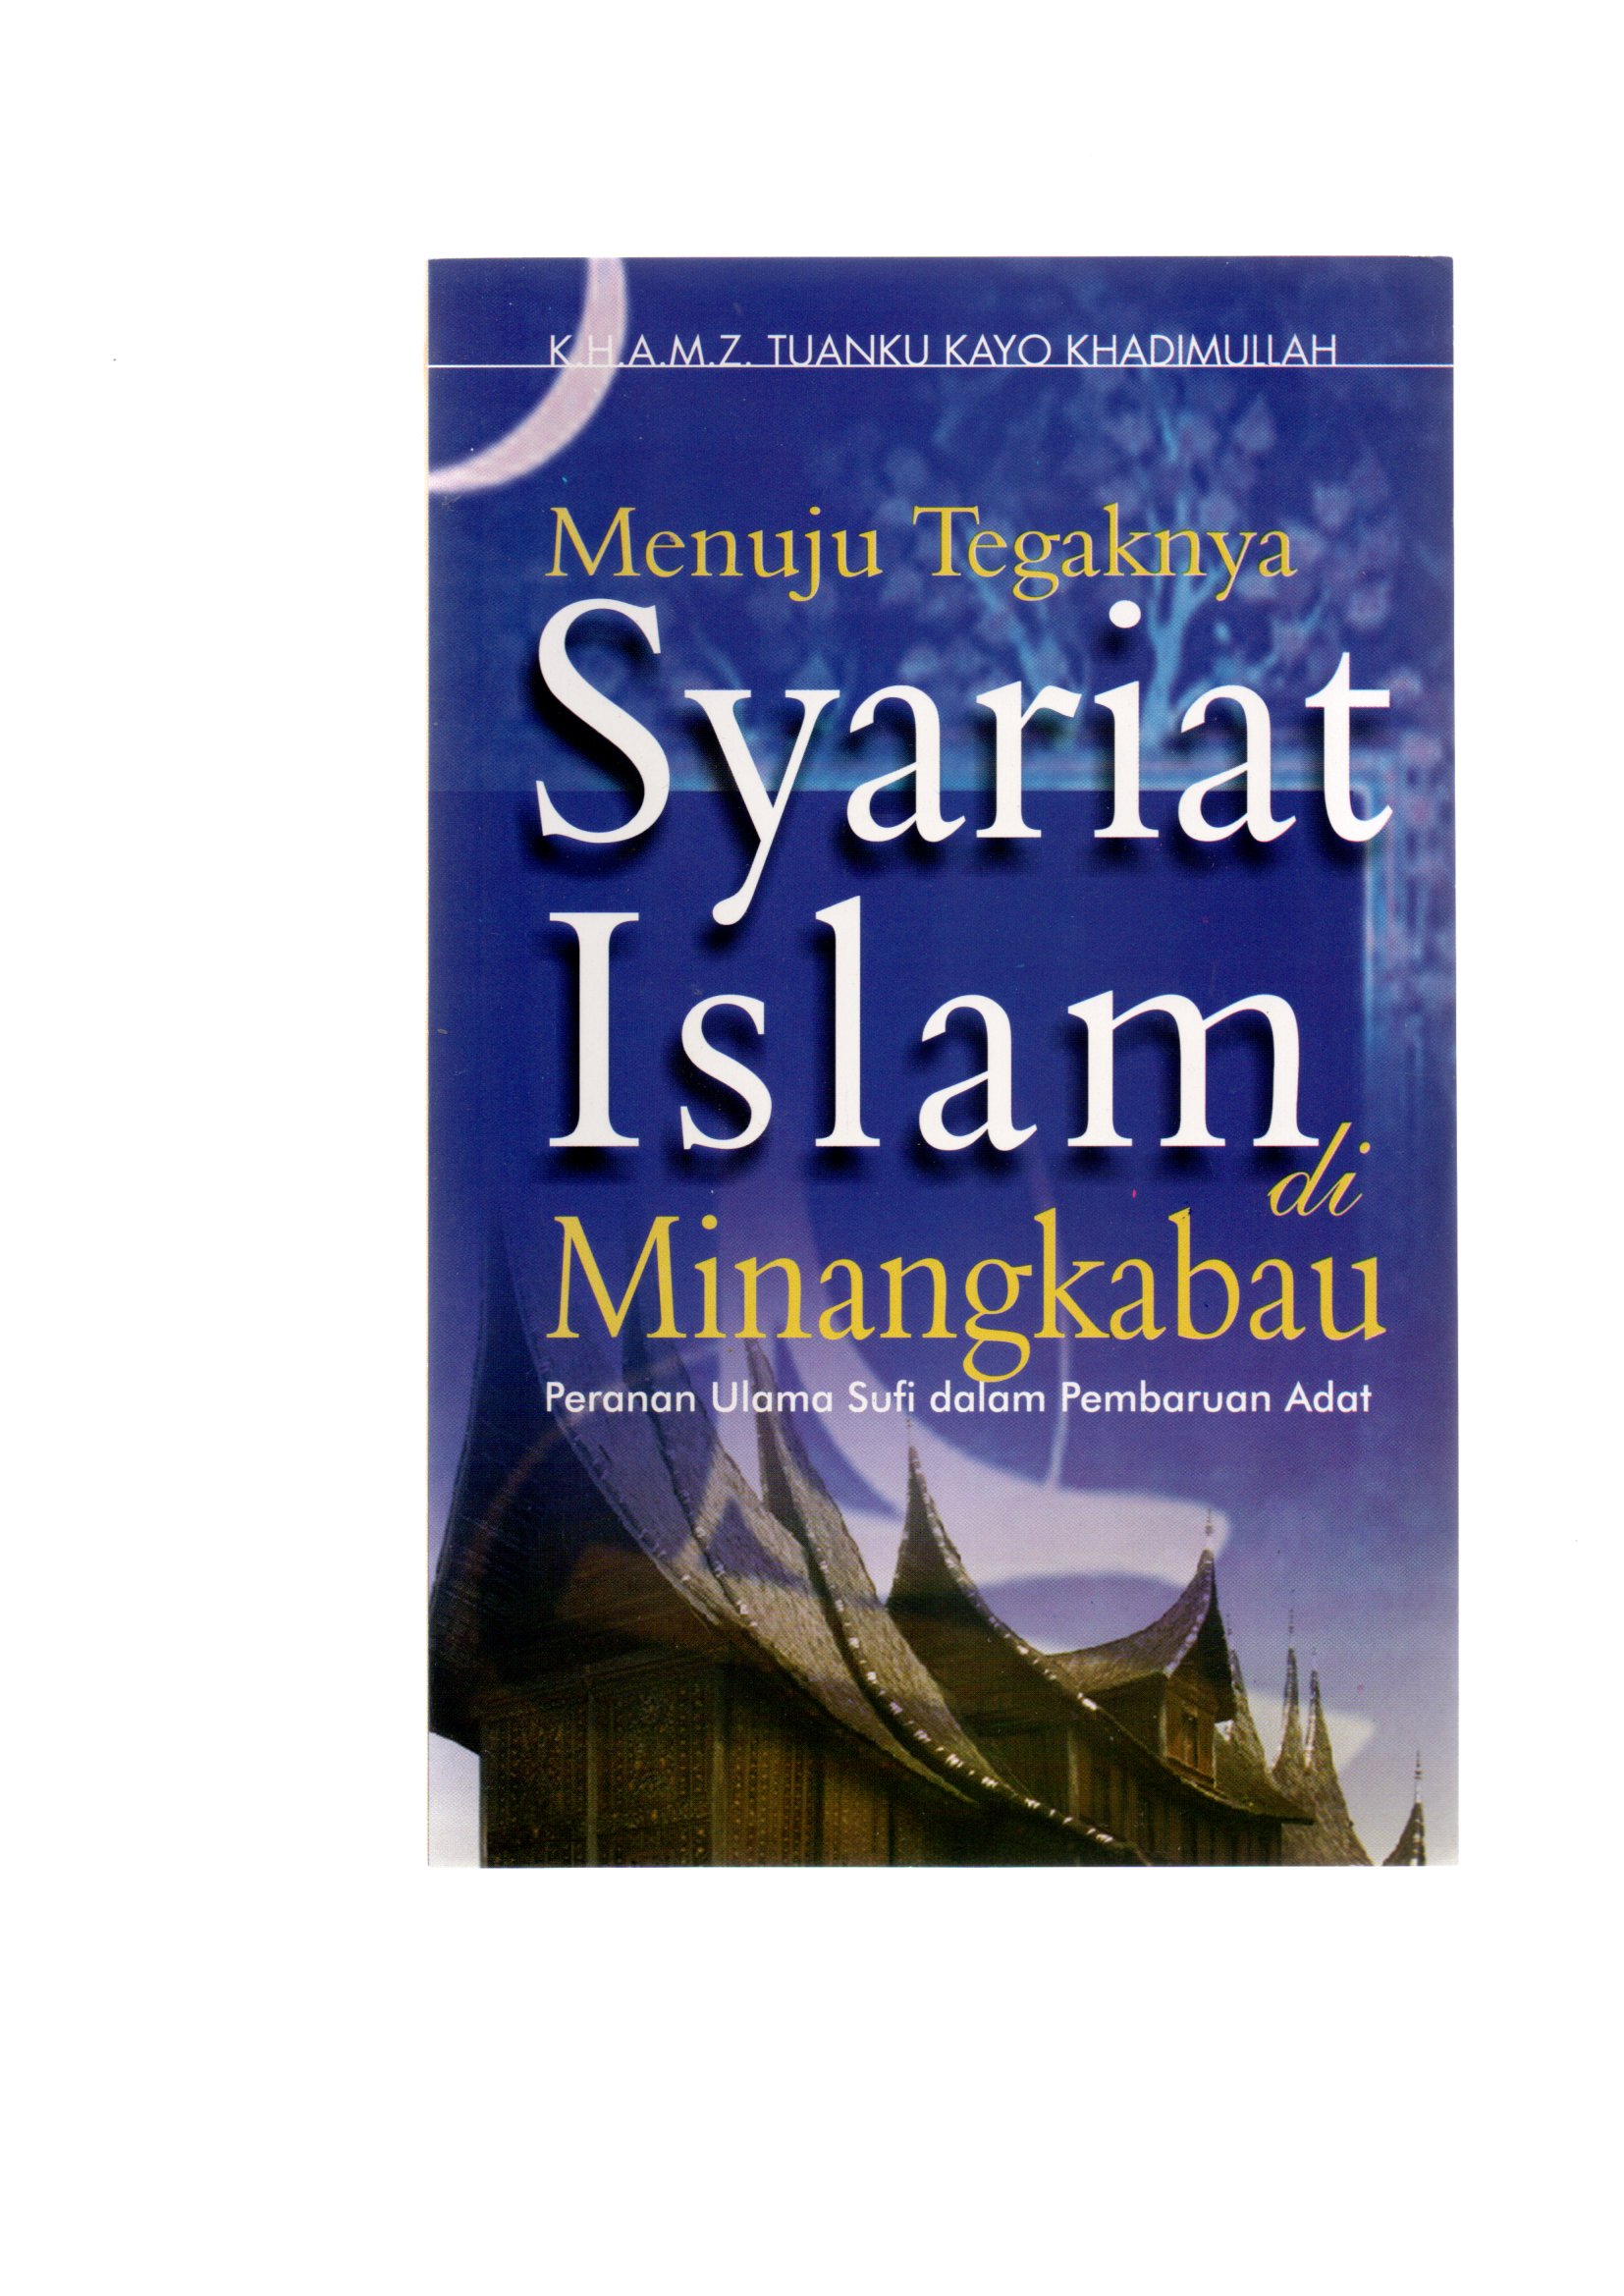 Menuju tegaknya syariat islam di minangkabau :  peranan ulama sufi dalam pembaruan adat